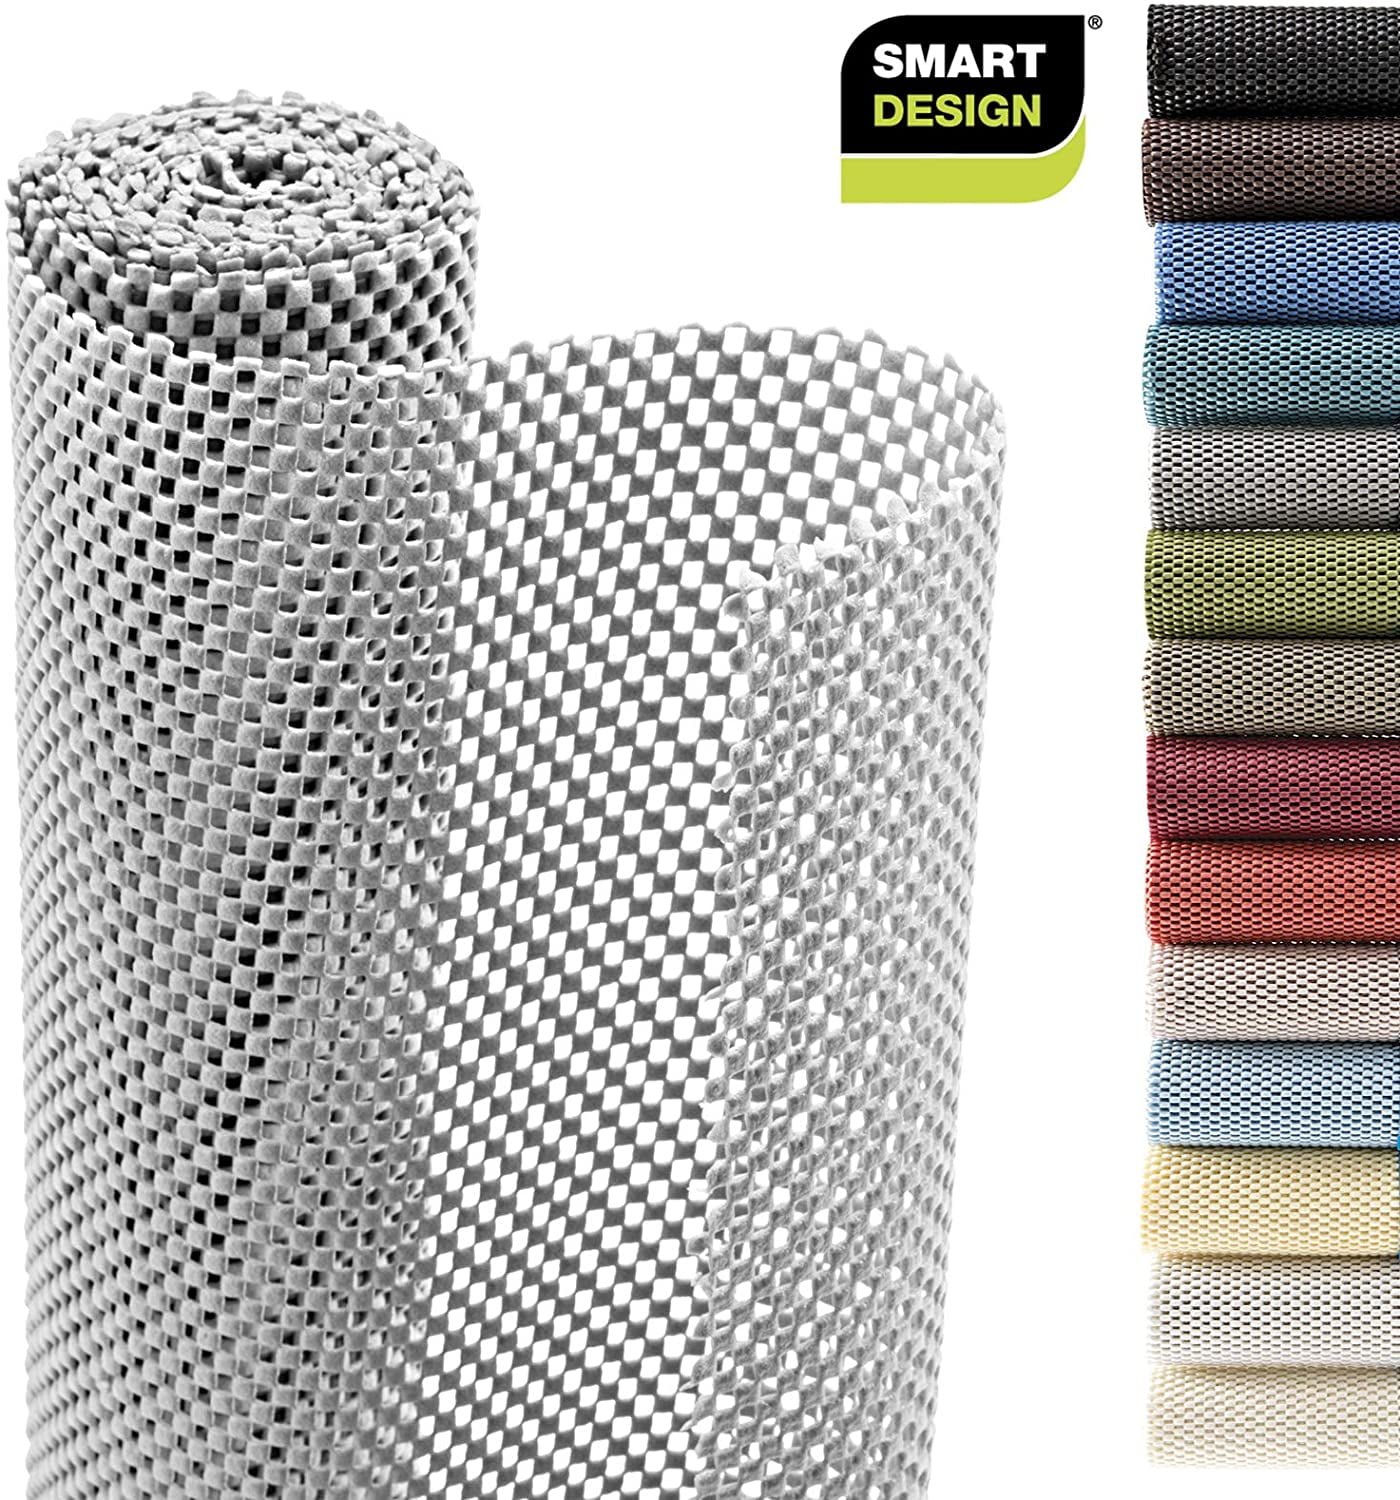 Smart Design Premium Cool Gray 12 in. D x 240 in L Checkered Non